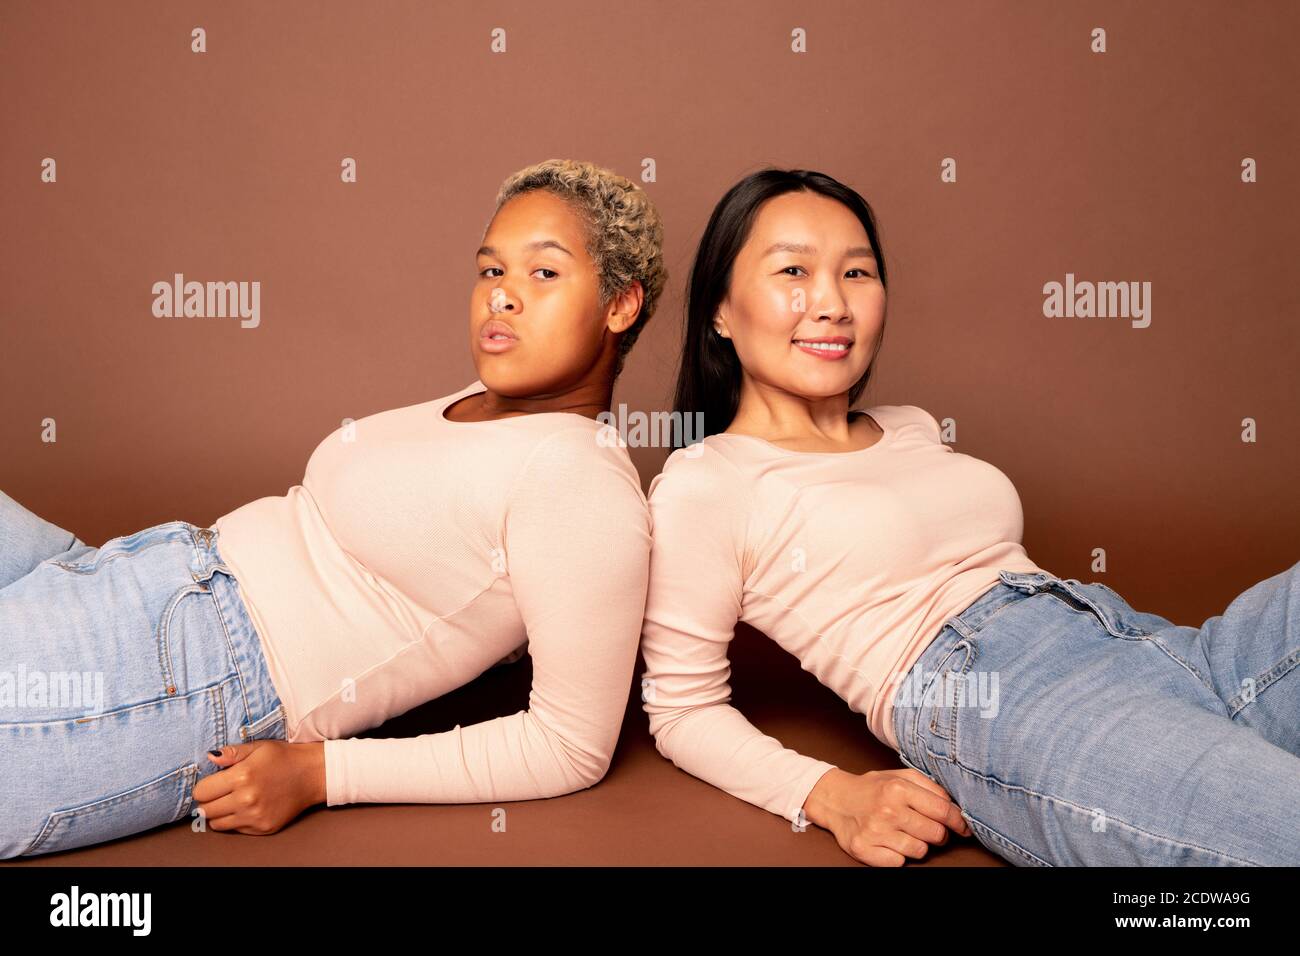 Dos jóvenes mujeres contemporáneas de diversas etnias que yacen en el suelo Foto de stock